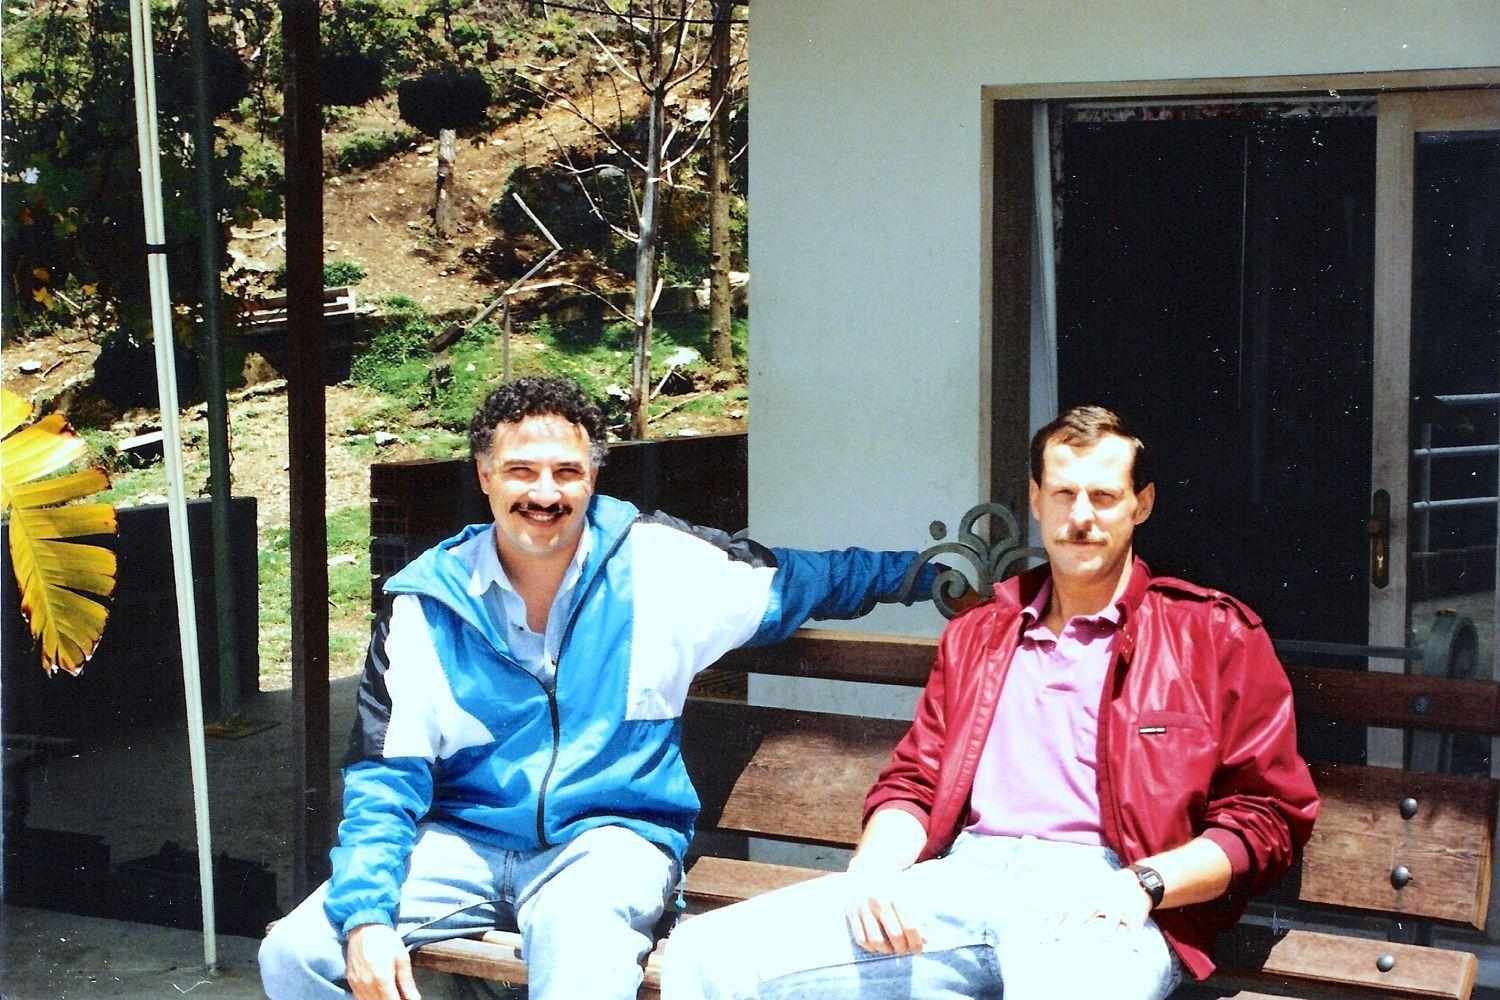 Javier Pena e Steve Murhpy, i due agenti della DEA protagonisti della caccia ad Escobar. La serie Narcos di Netflix ruota intorno alle loro operazioni.